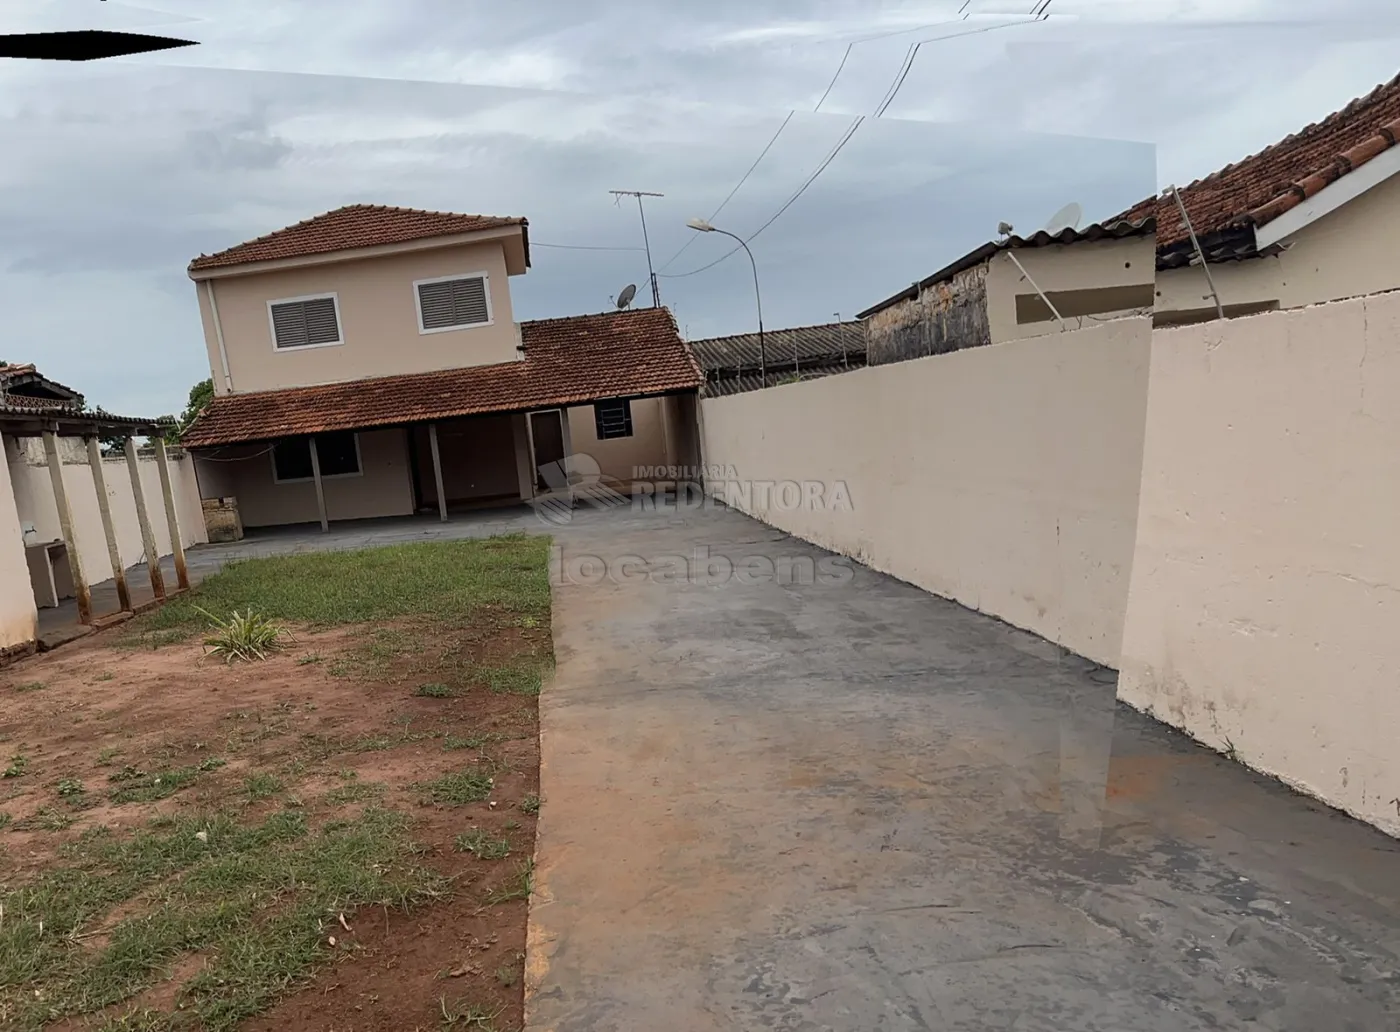 Comprar Casa / Padrão em São José do Rio Preto apenas R$ 400.000,00 - Foto 2